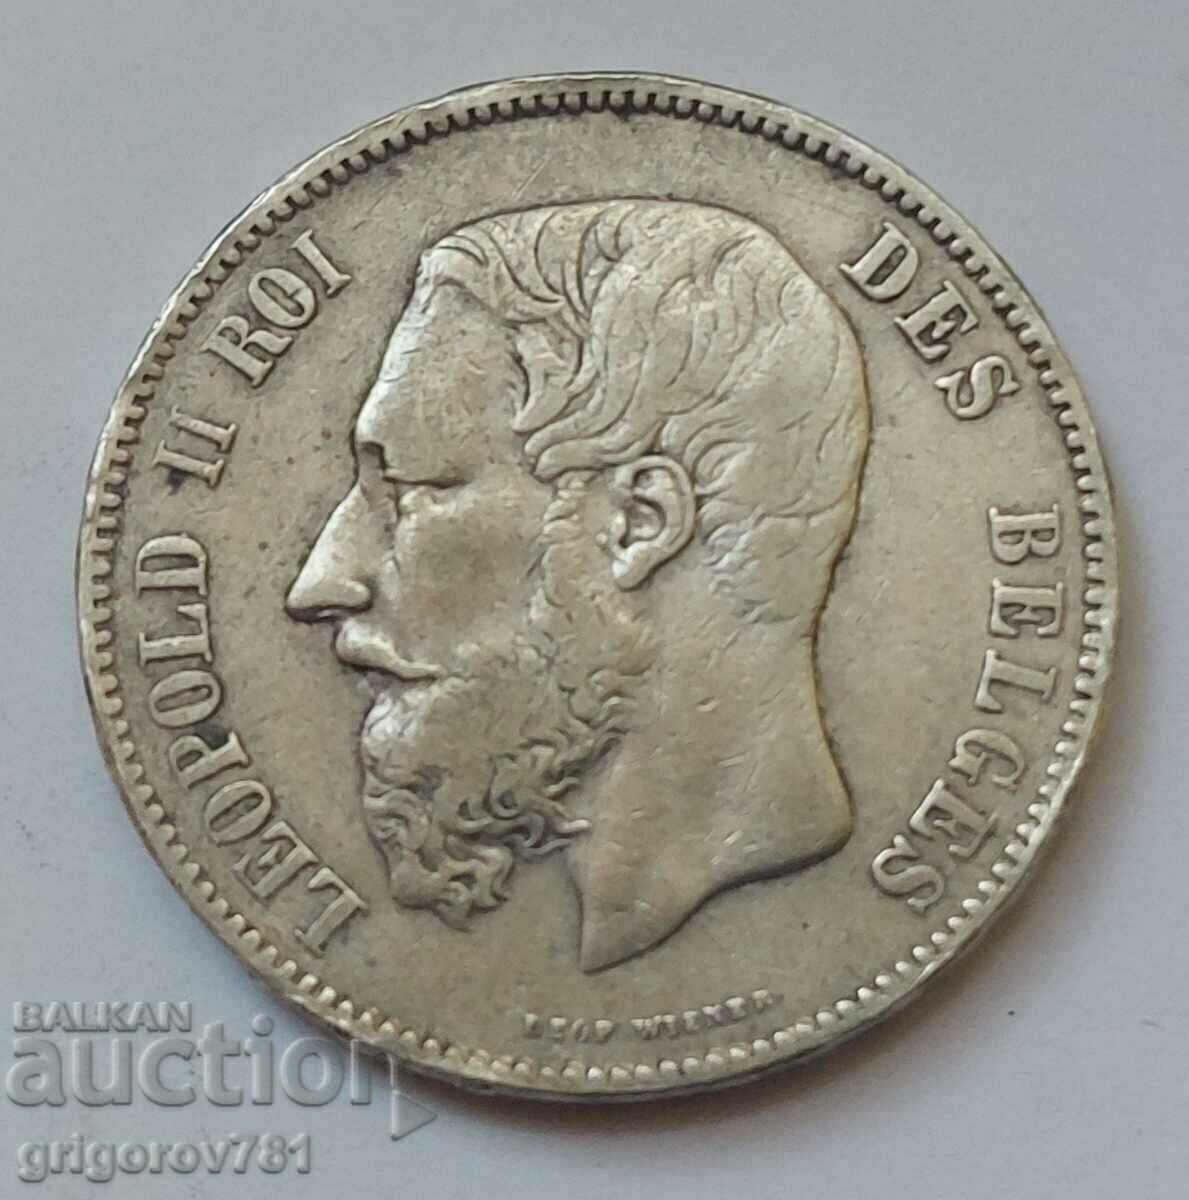 5 Francs Silver Belgium 1869 Silver Coin #161